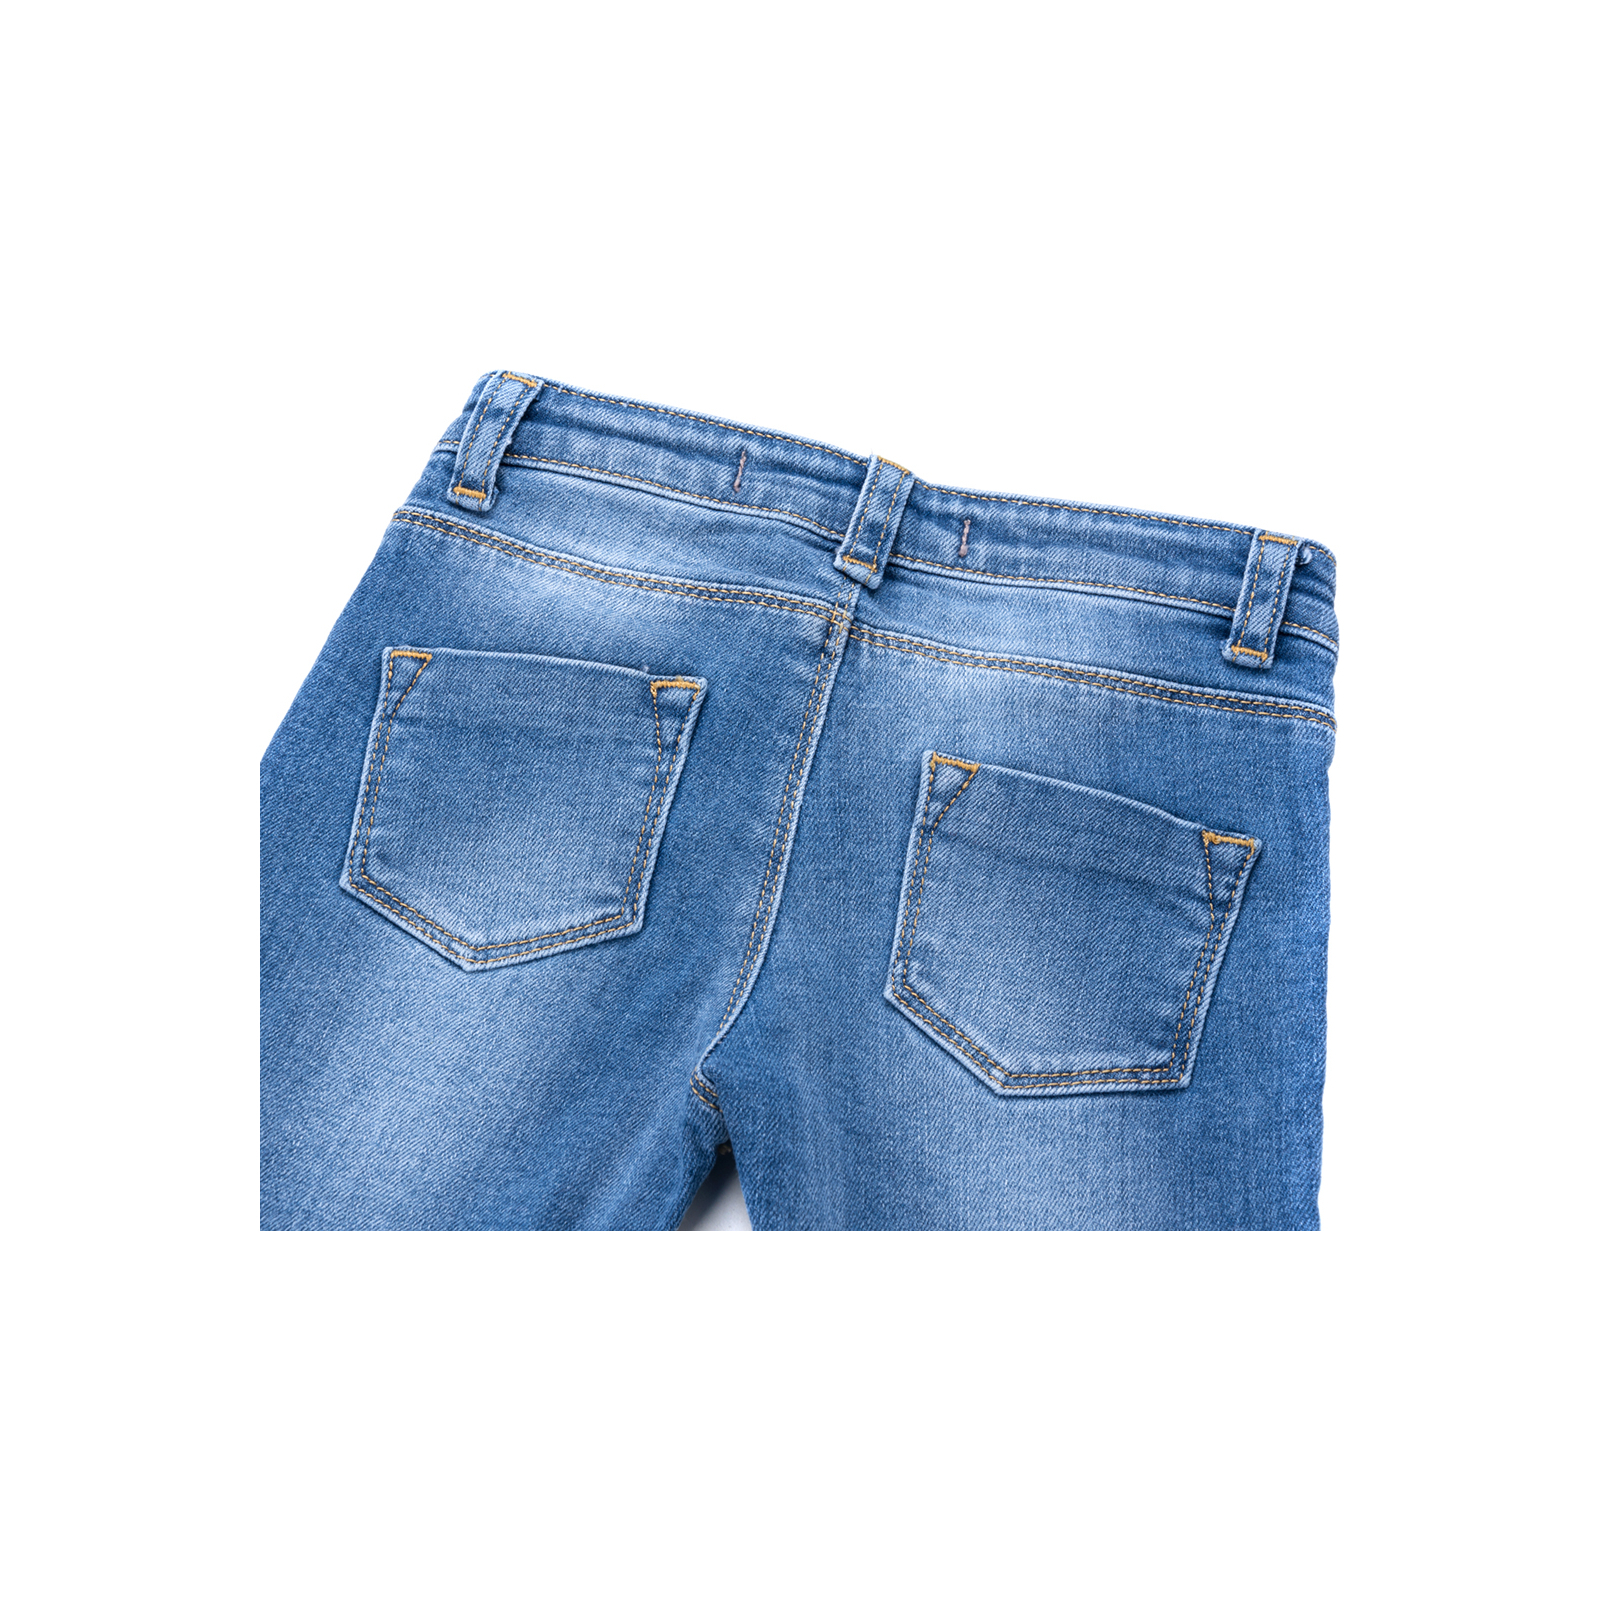 Джинсы Breeze джинсовые с цветочками (OZ-17703-92G-jeans) изображение 4